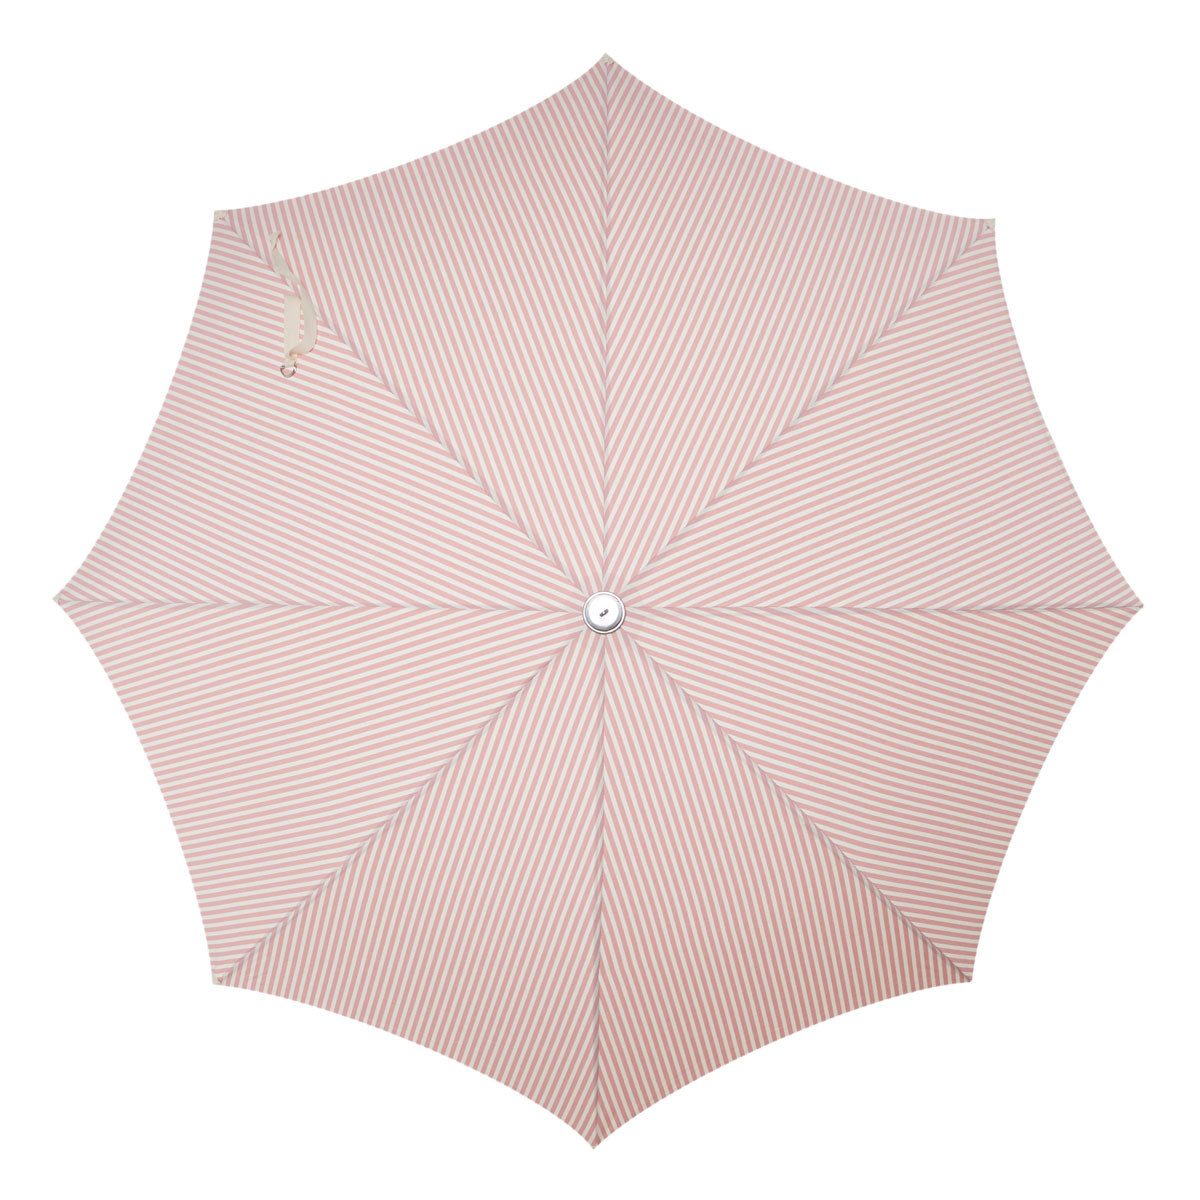 Premium Beach Umbrella Business & Pleasure